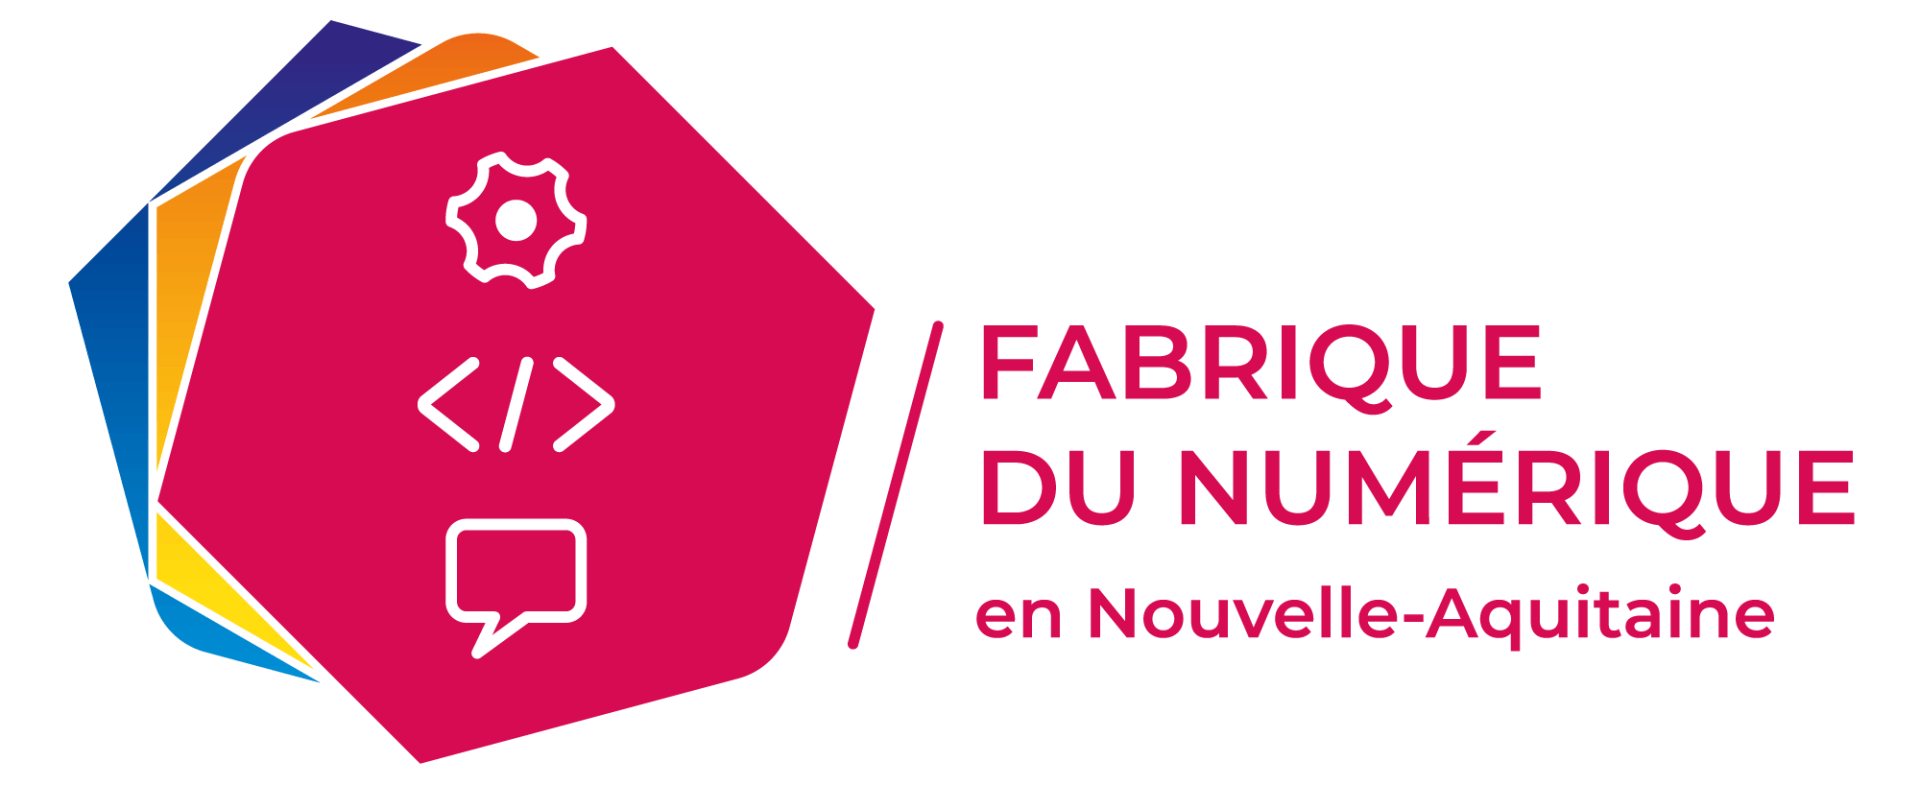 Logo Fabrique du Numérique en Nouvelle-Aquitaine, formations au digital à Poitiers, Niort, Angoulême